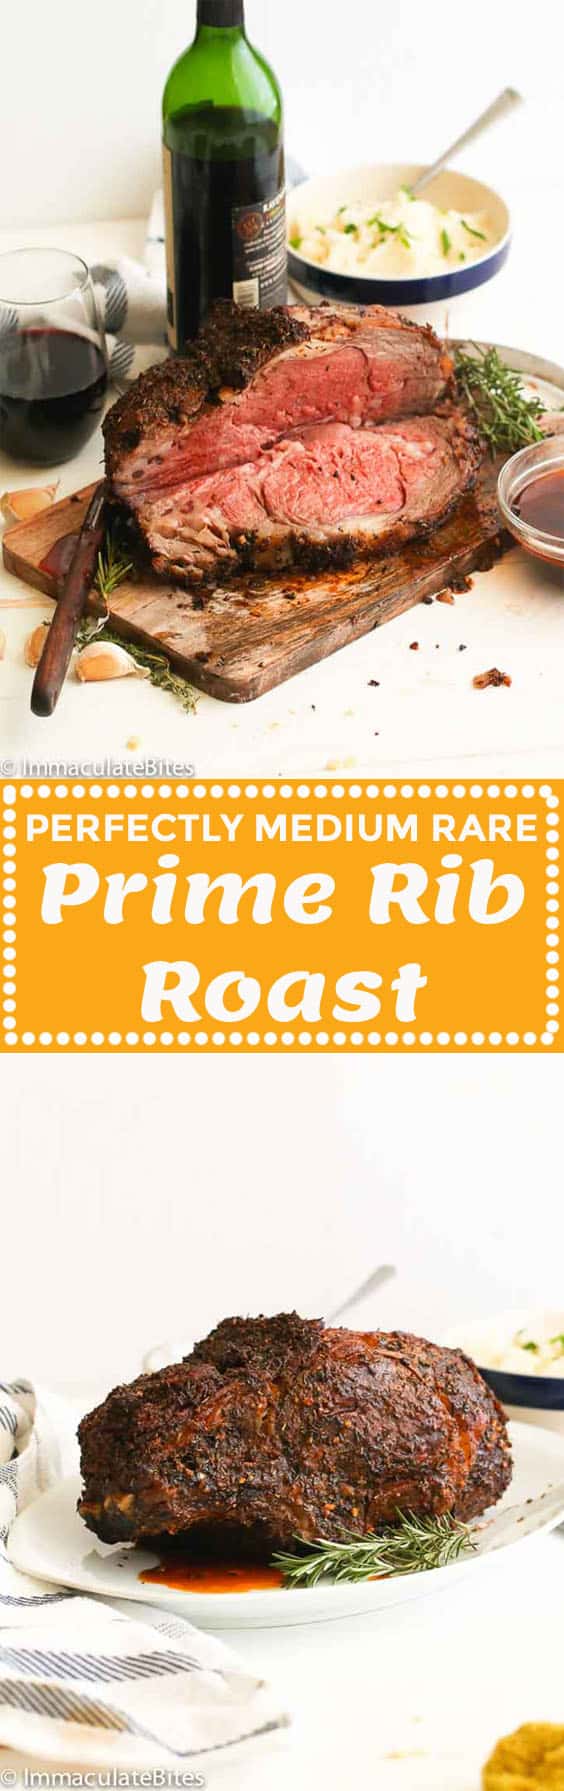 Prime Rib Roast